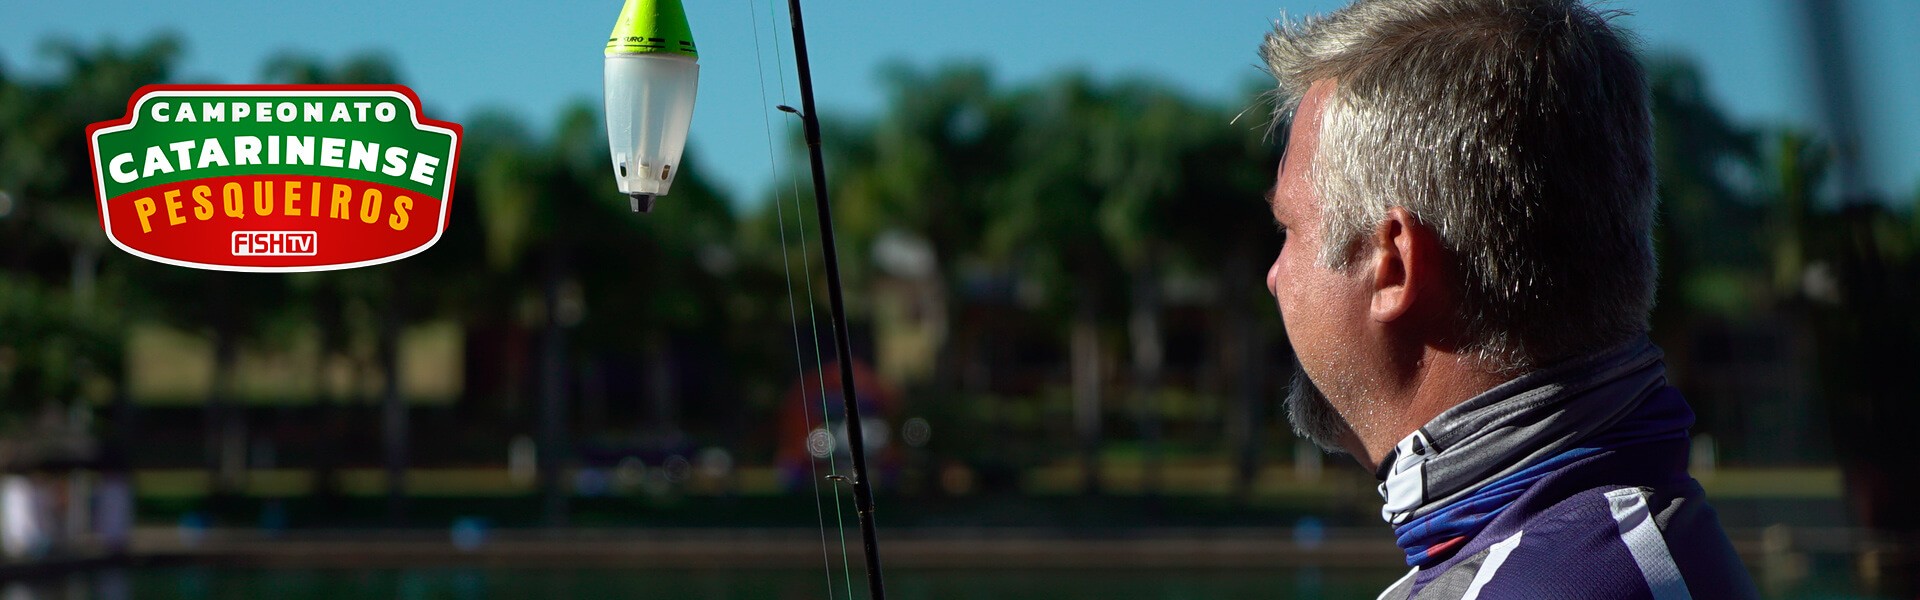 Sítio Três Lagoas passa por transformação para o Campeonato Catarinense em Pesqueiros